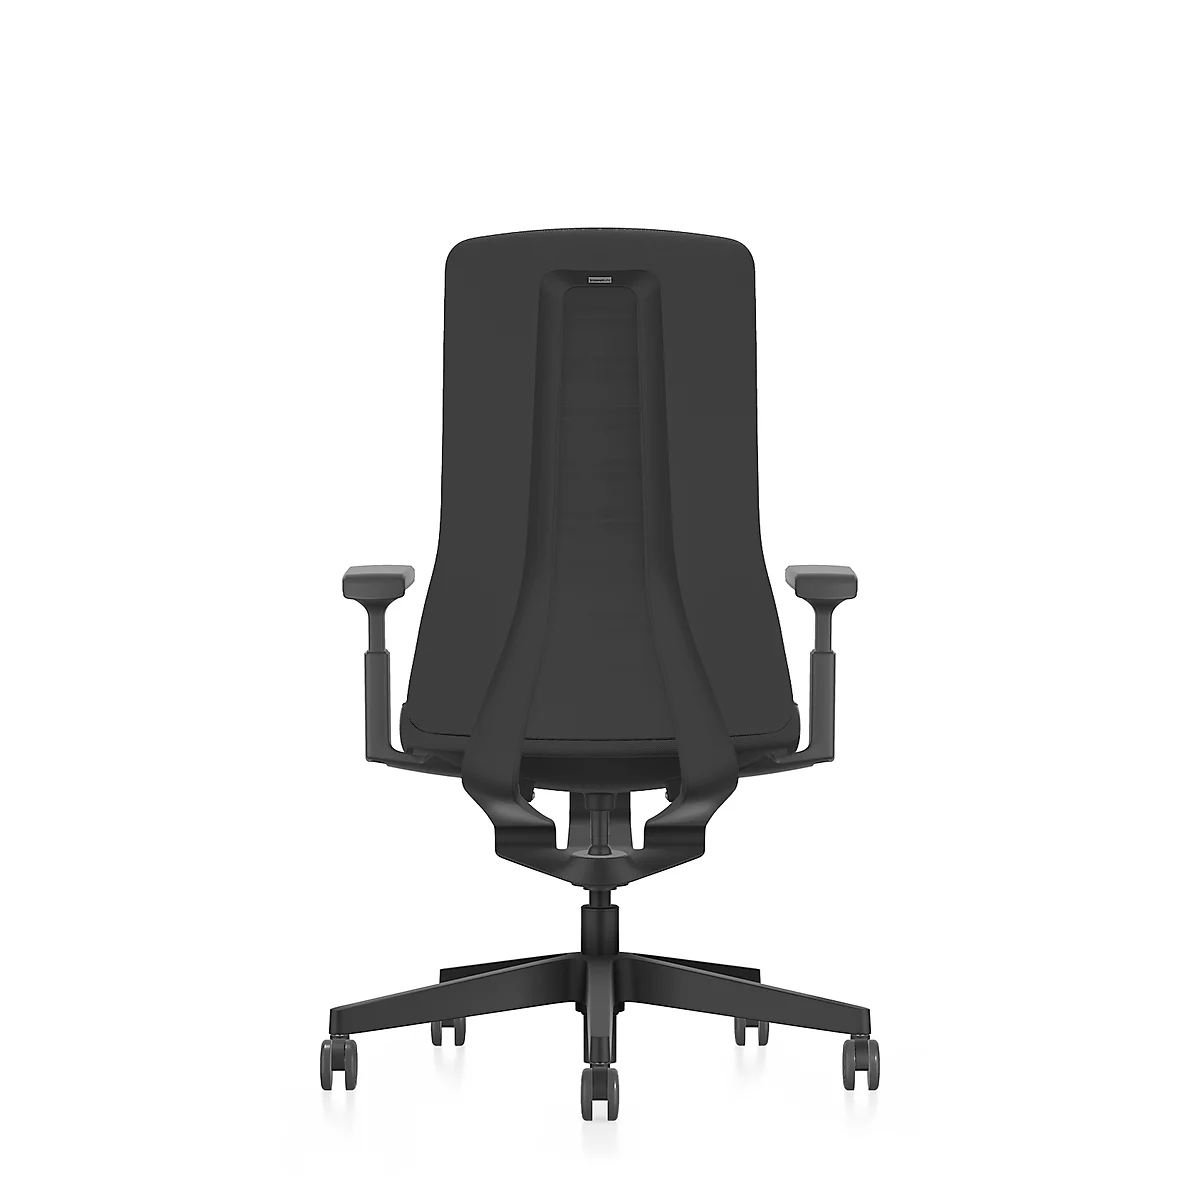 Interstuhl Bürostuhl PUREis3, verstellbare Armlehnen, 3D-Auto-Synchronmechanik, Muldensitz, Polster-Netzrücken, schwarz/schwarz